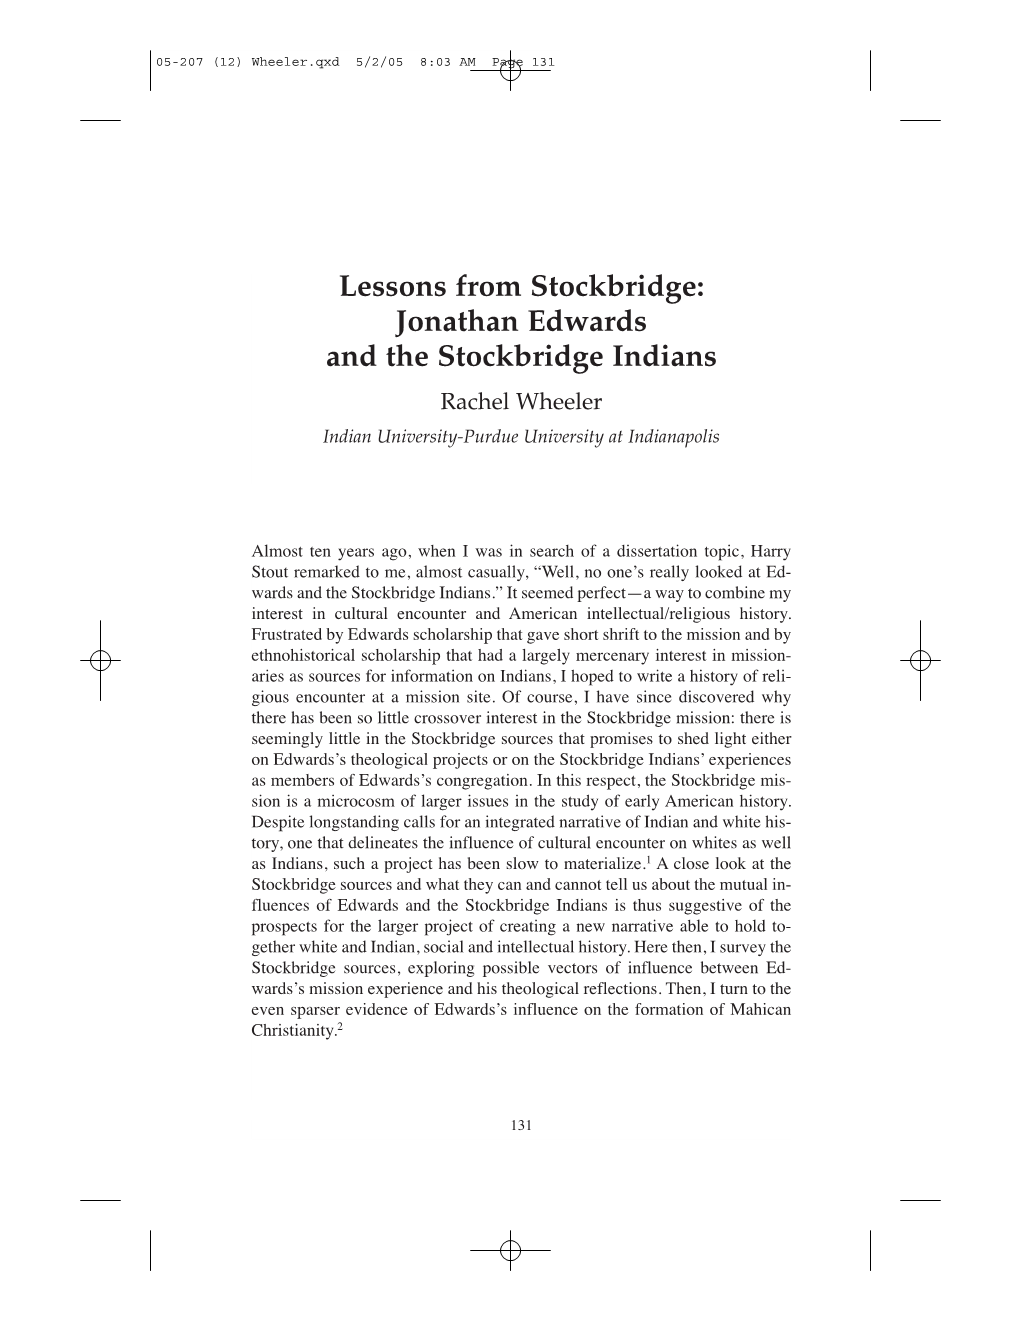 Jonathan Edwards and the Stockbridge Indians Rachel Wheeler Indian University-Purdue University at Indianapolis